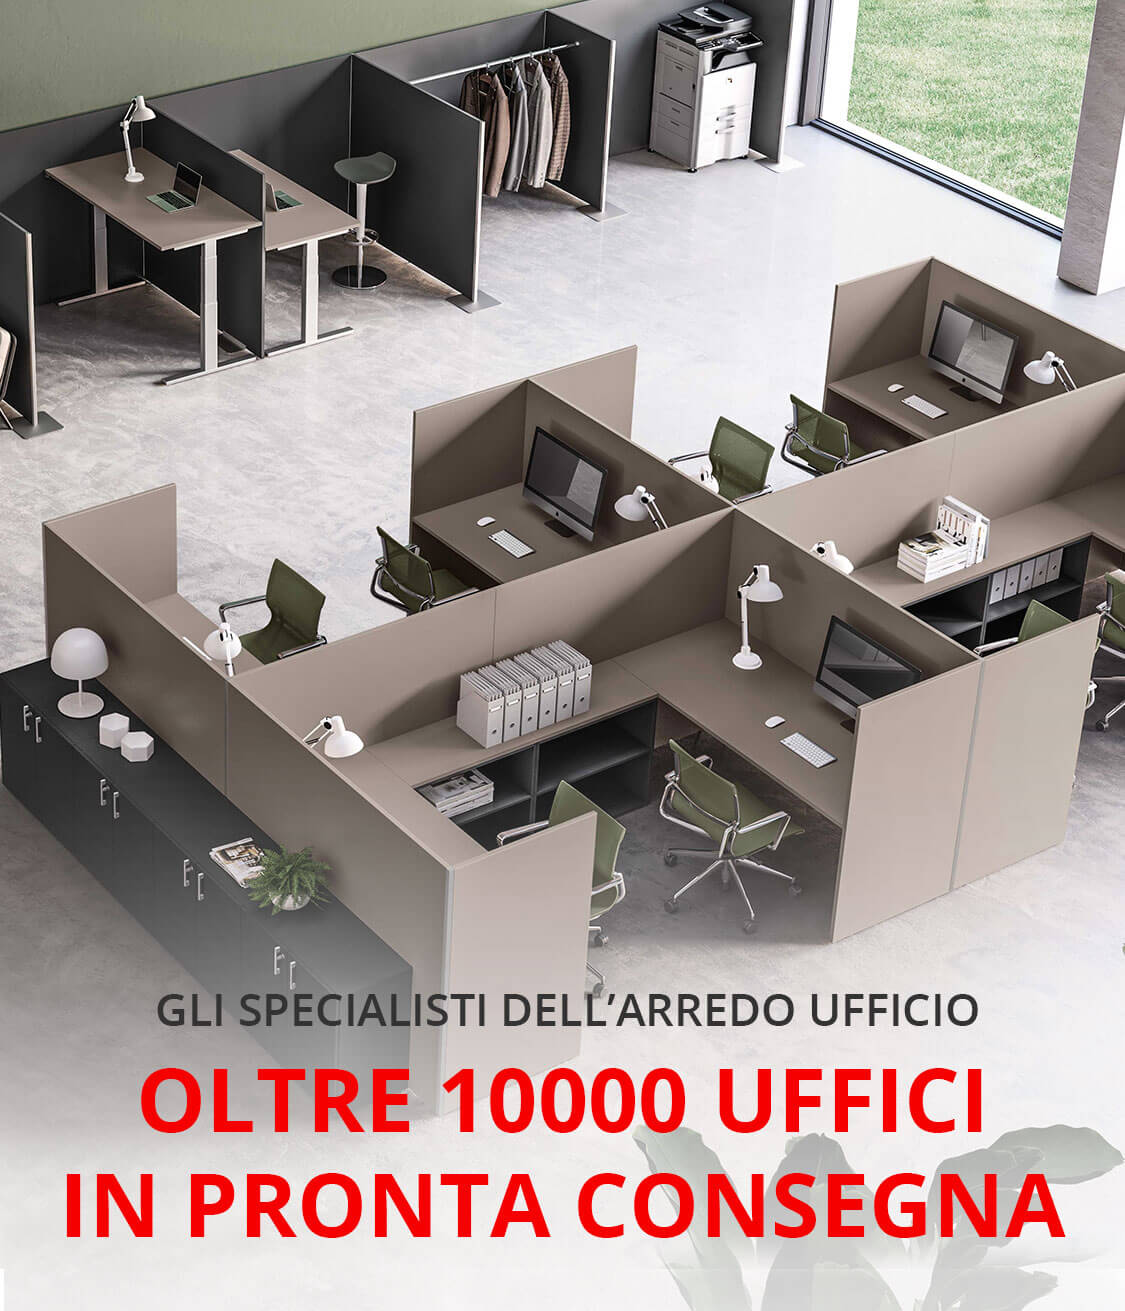 Office Planet - mobili per ufficio a Roma, Milano, Padova e nel resto  d'Italia